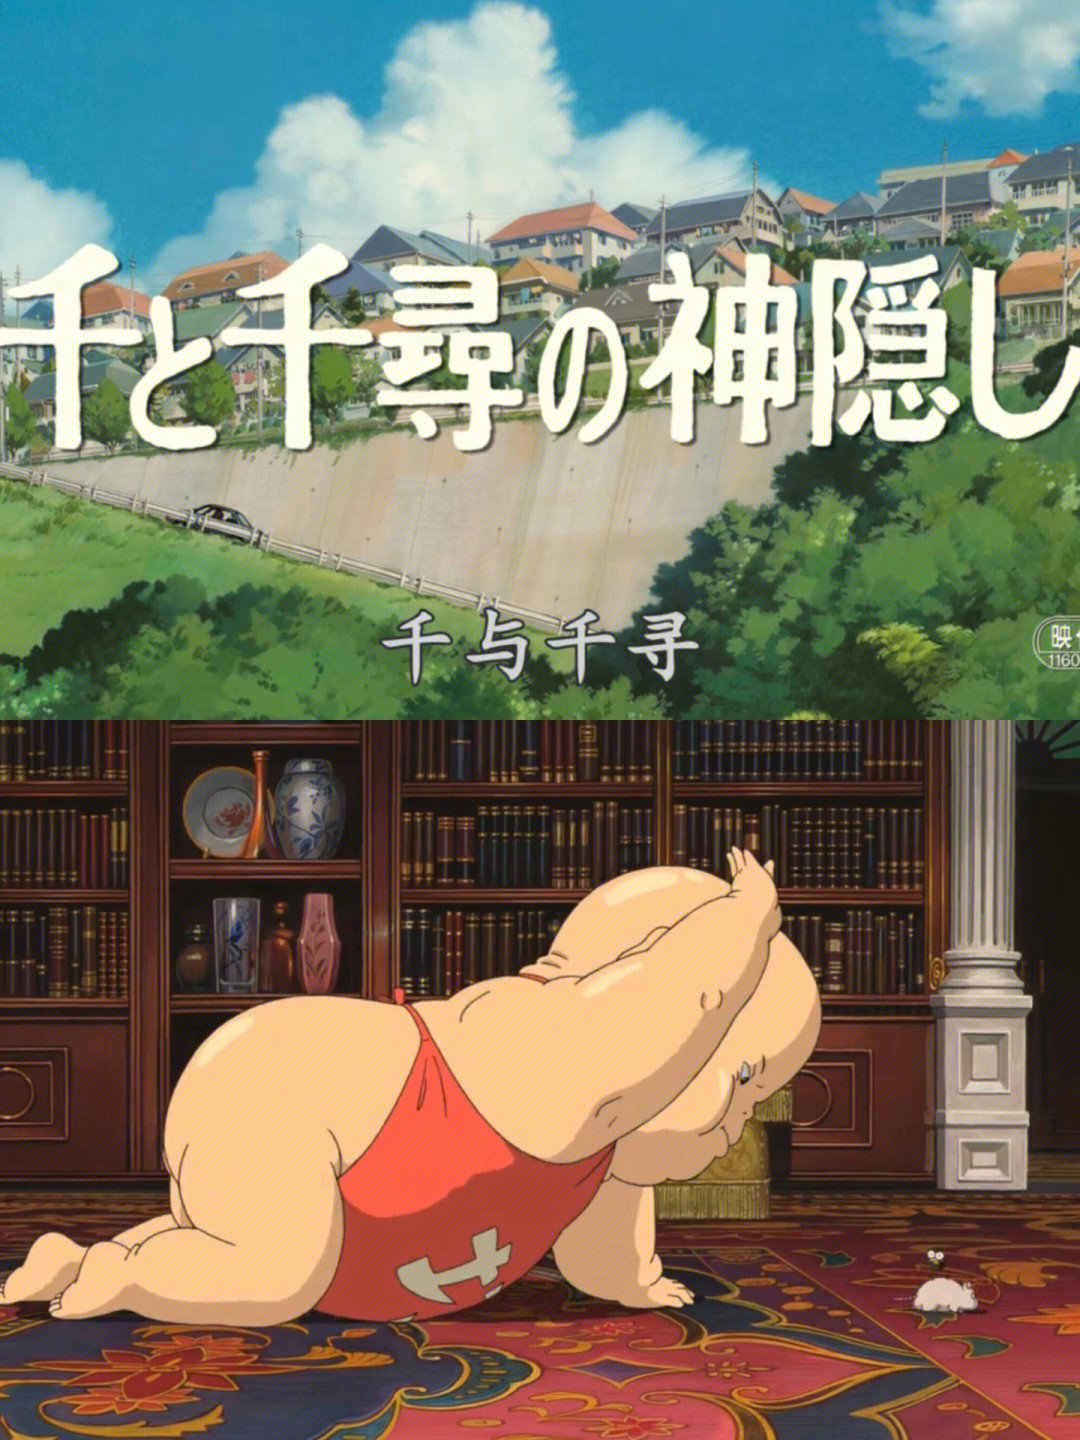 2001年77时长:2h今天看了第一部日本动漫,远了豆瓣排名第一的这部